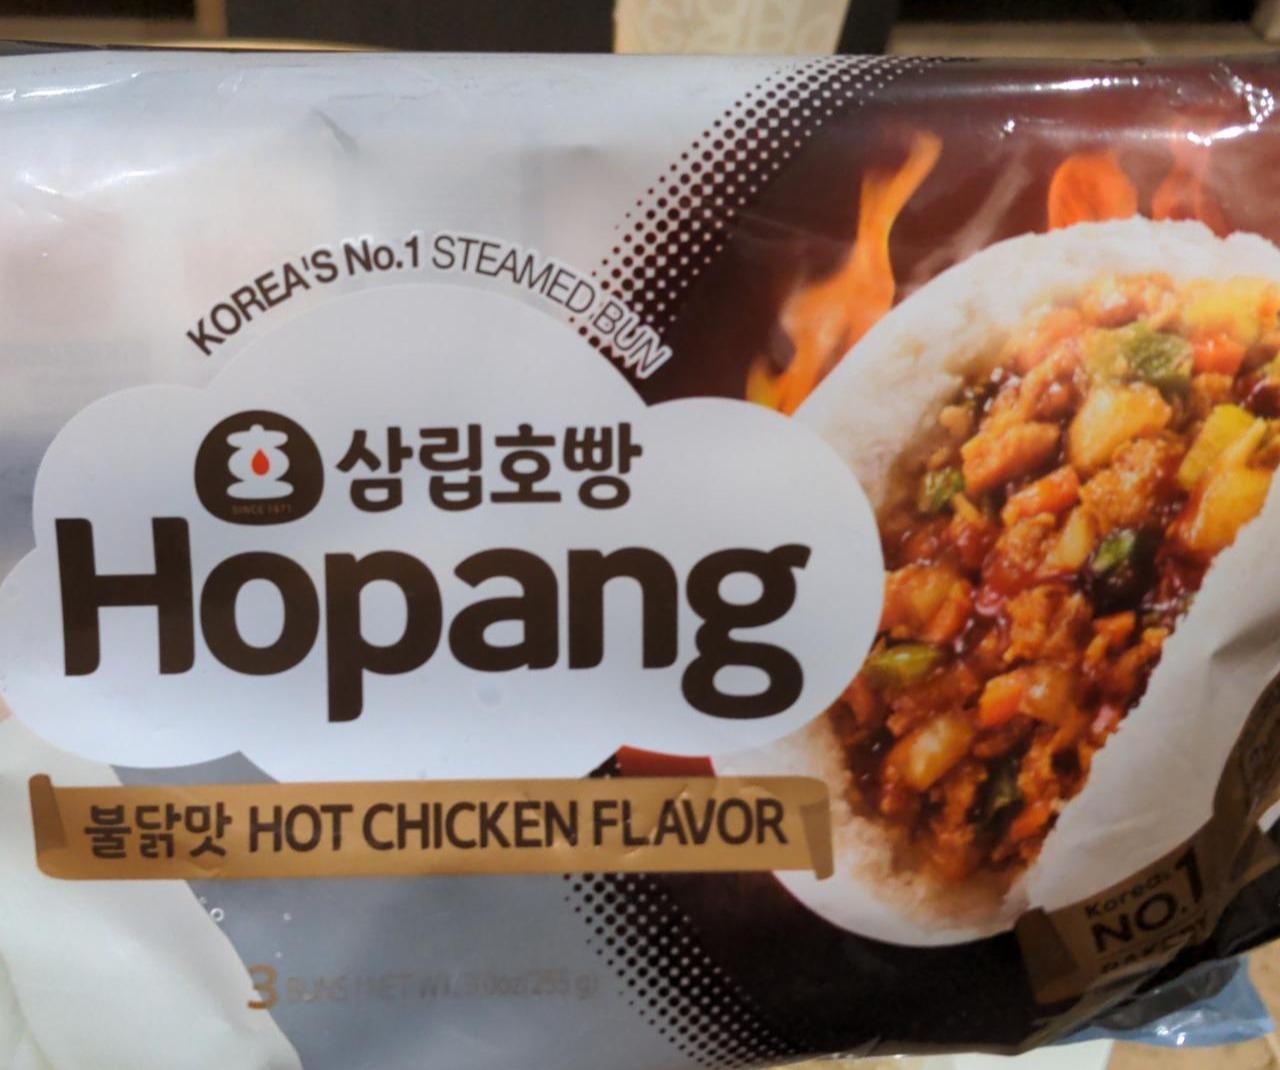 Fotografie - Hopang Hot Chicken Flavour Steamed Bun Samlip